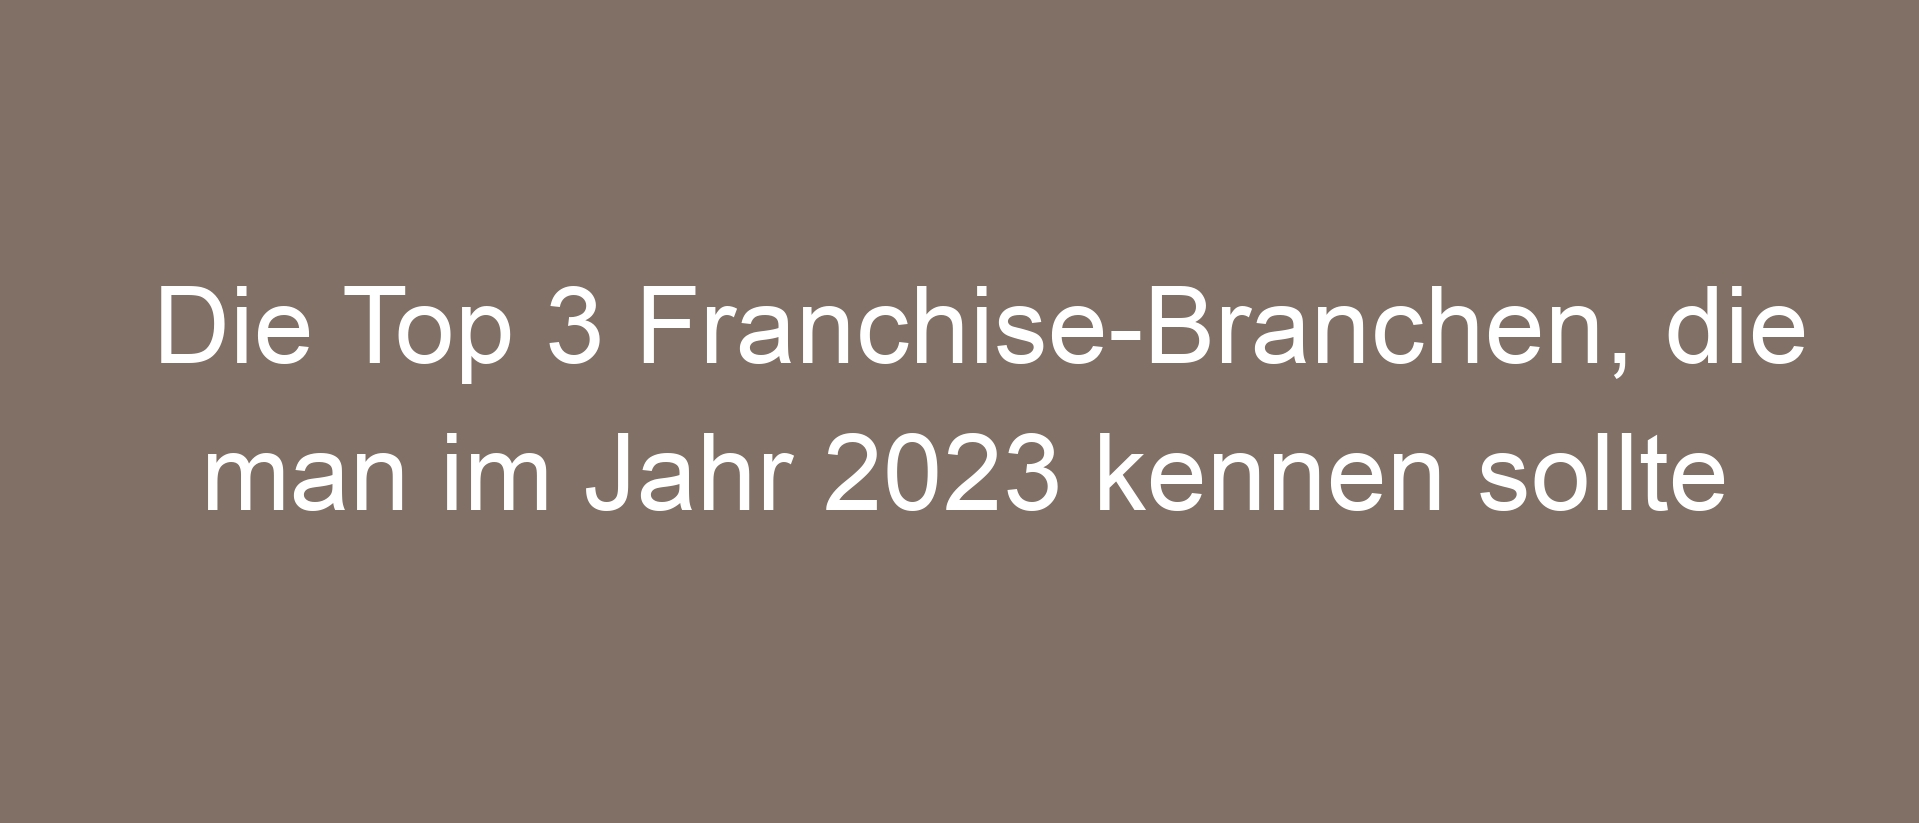 Die Top 3 Franchise-Branchen, die man im Jahr 2023 kennen sollte